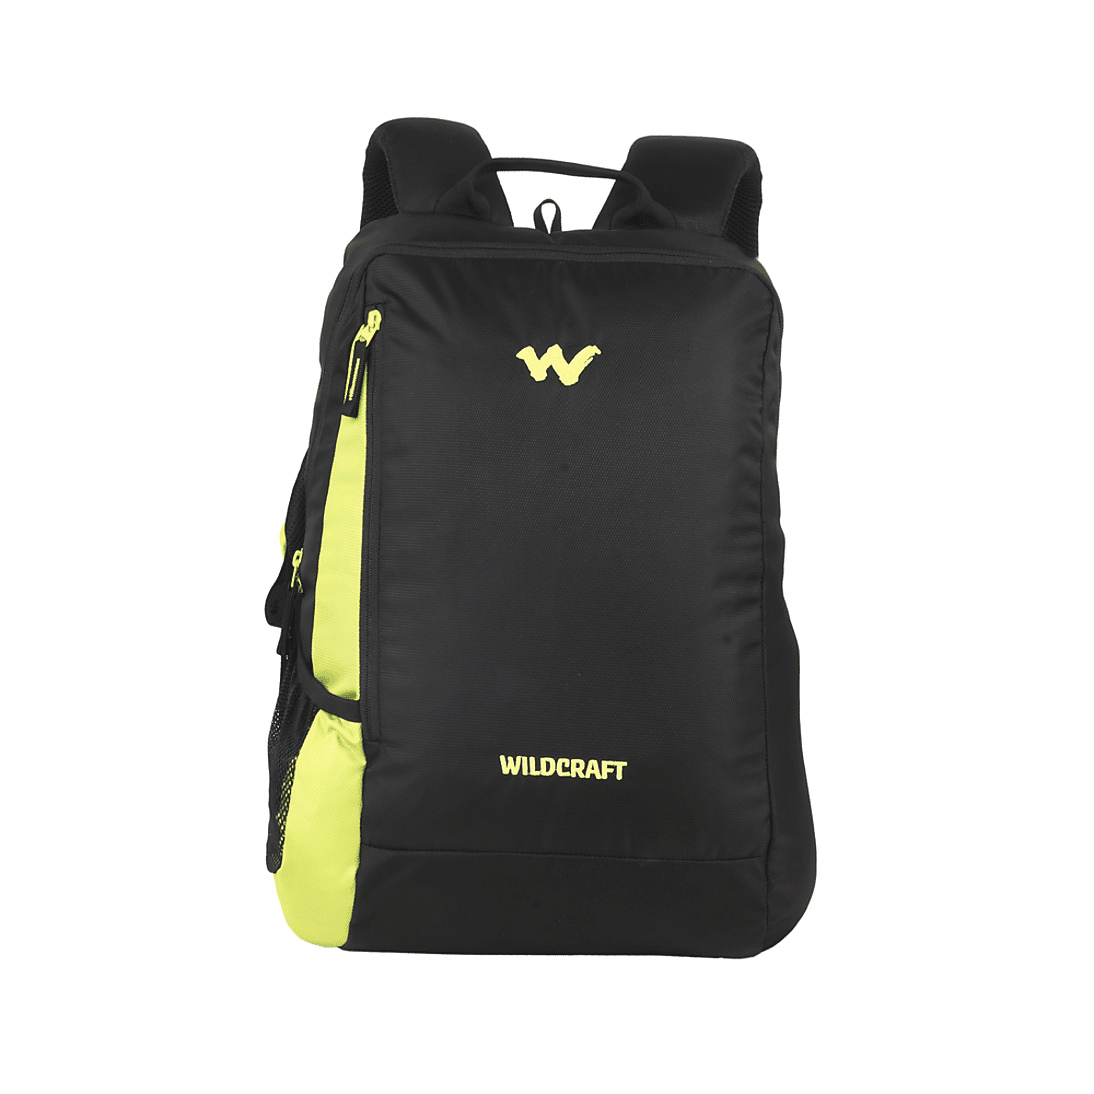 Wildcraft lapttop bag